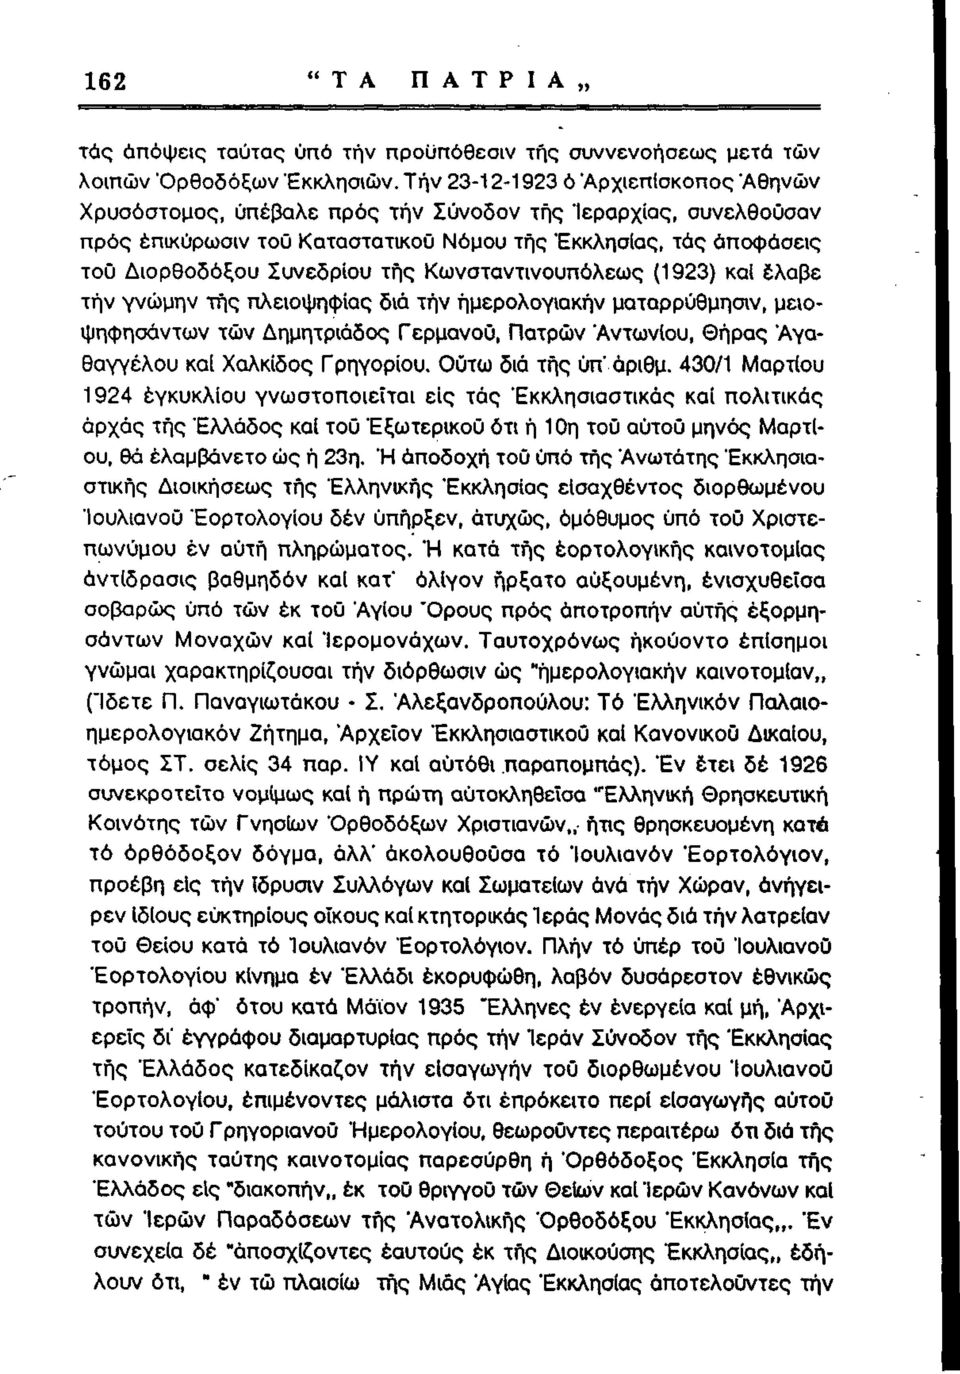 τής Κωνσταντινουπόλεως (1923) καί έλαβε τήν γνώμην τής πλειοψηφίας διά τήν ήμερολογιακήν ματαρρύθμησιν, μειοψήφησα ντων τών Δημητριάδος Γερμανού, Πατρών "Αντωνίου, Θήρας Άγαθαγγέλου καί Χαλκίδος